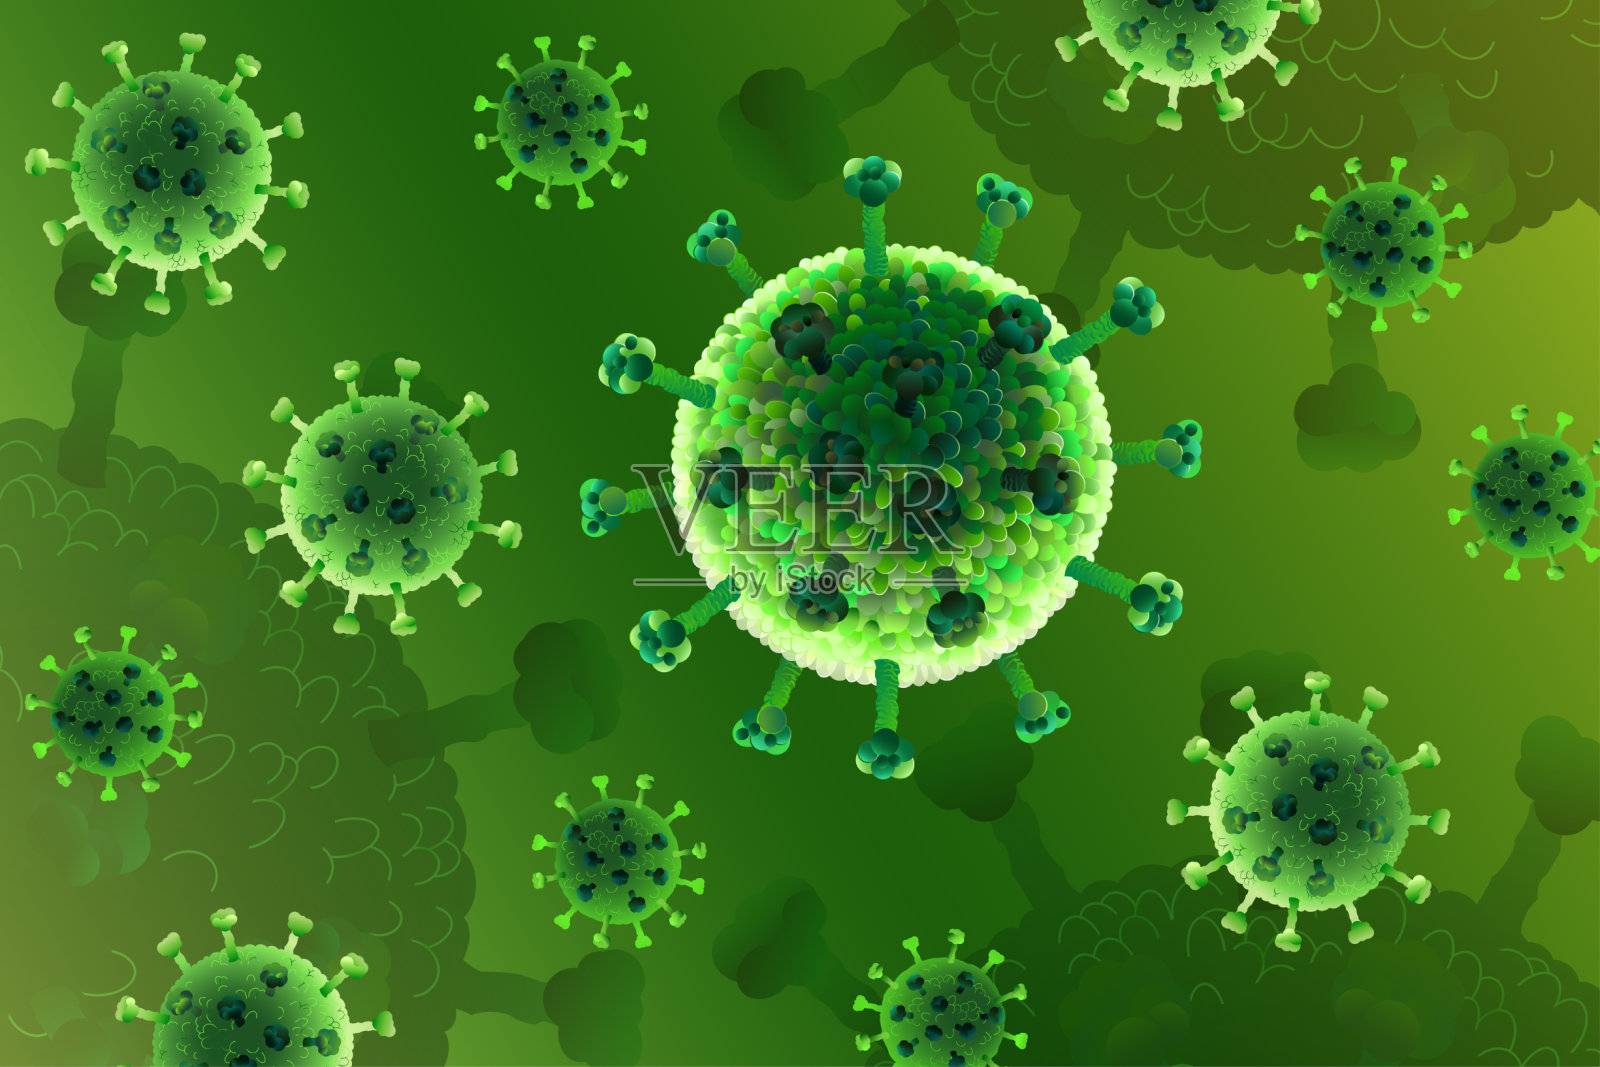 冠状病毒病COVID-19，危险的呼吸道感染，SARS-CoV-2。流感爆发，病原体流感或艾滋病毒，绿色癌细胞。插画图片素材